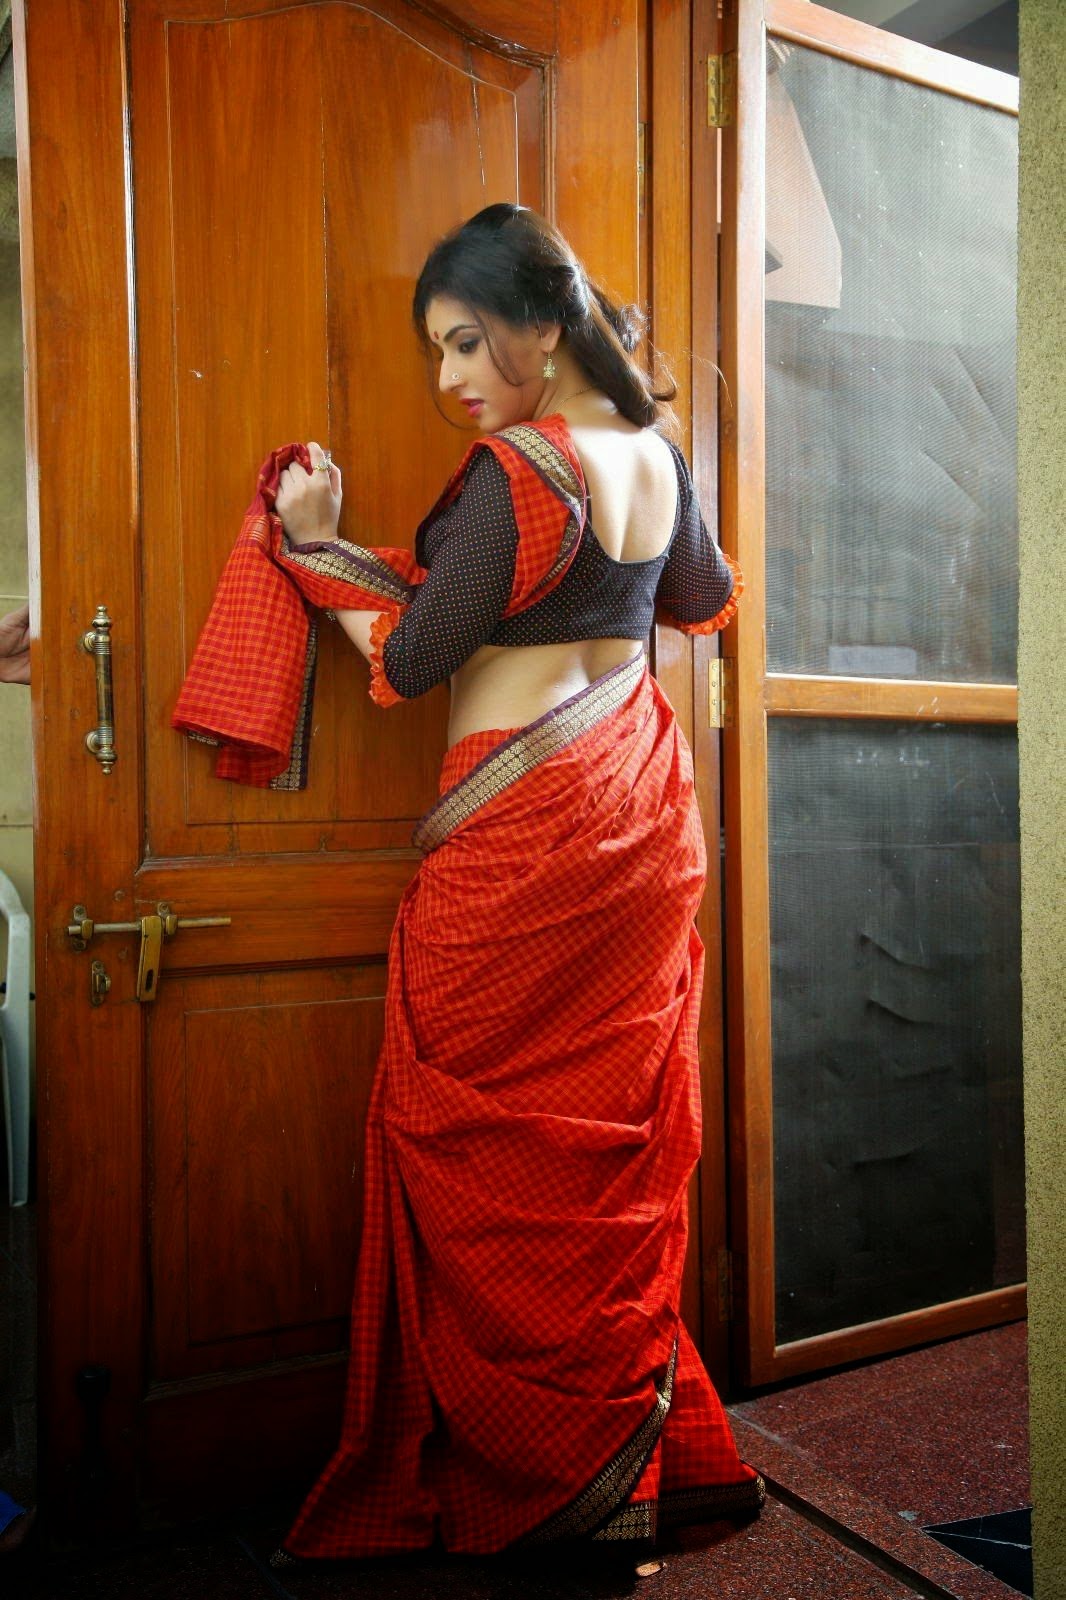 actress archana harish hot saree navel images